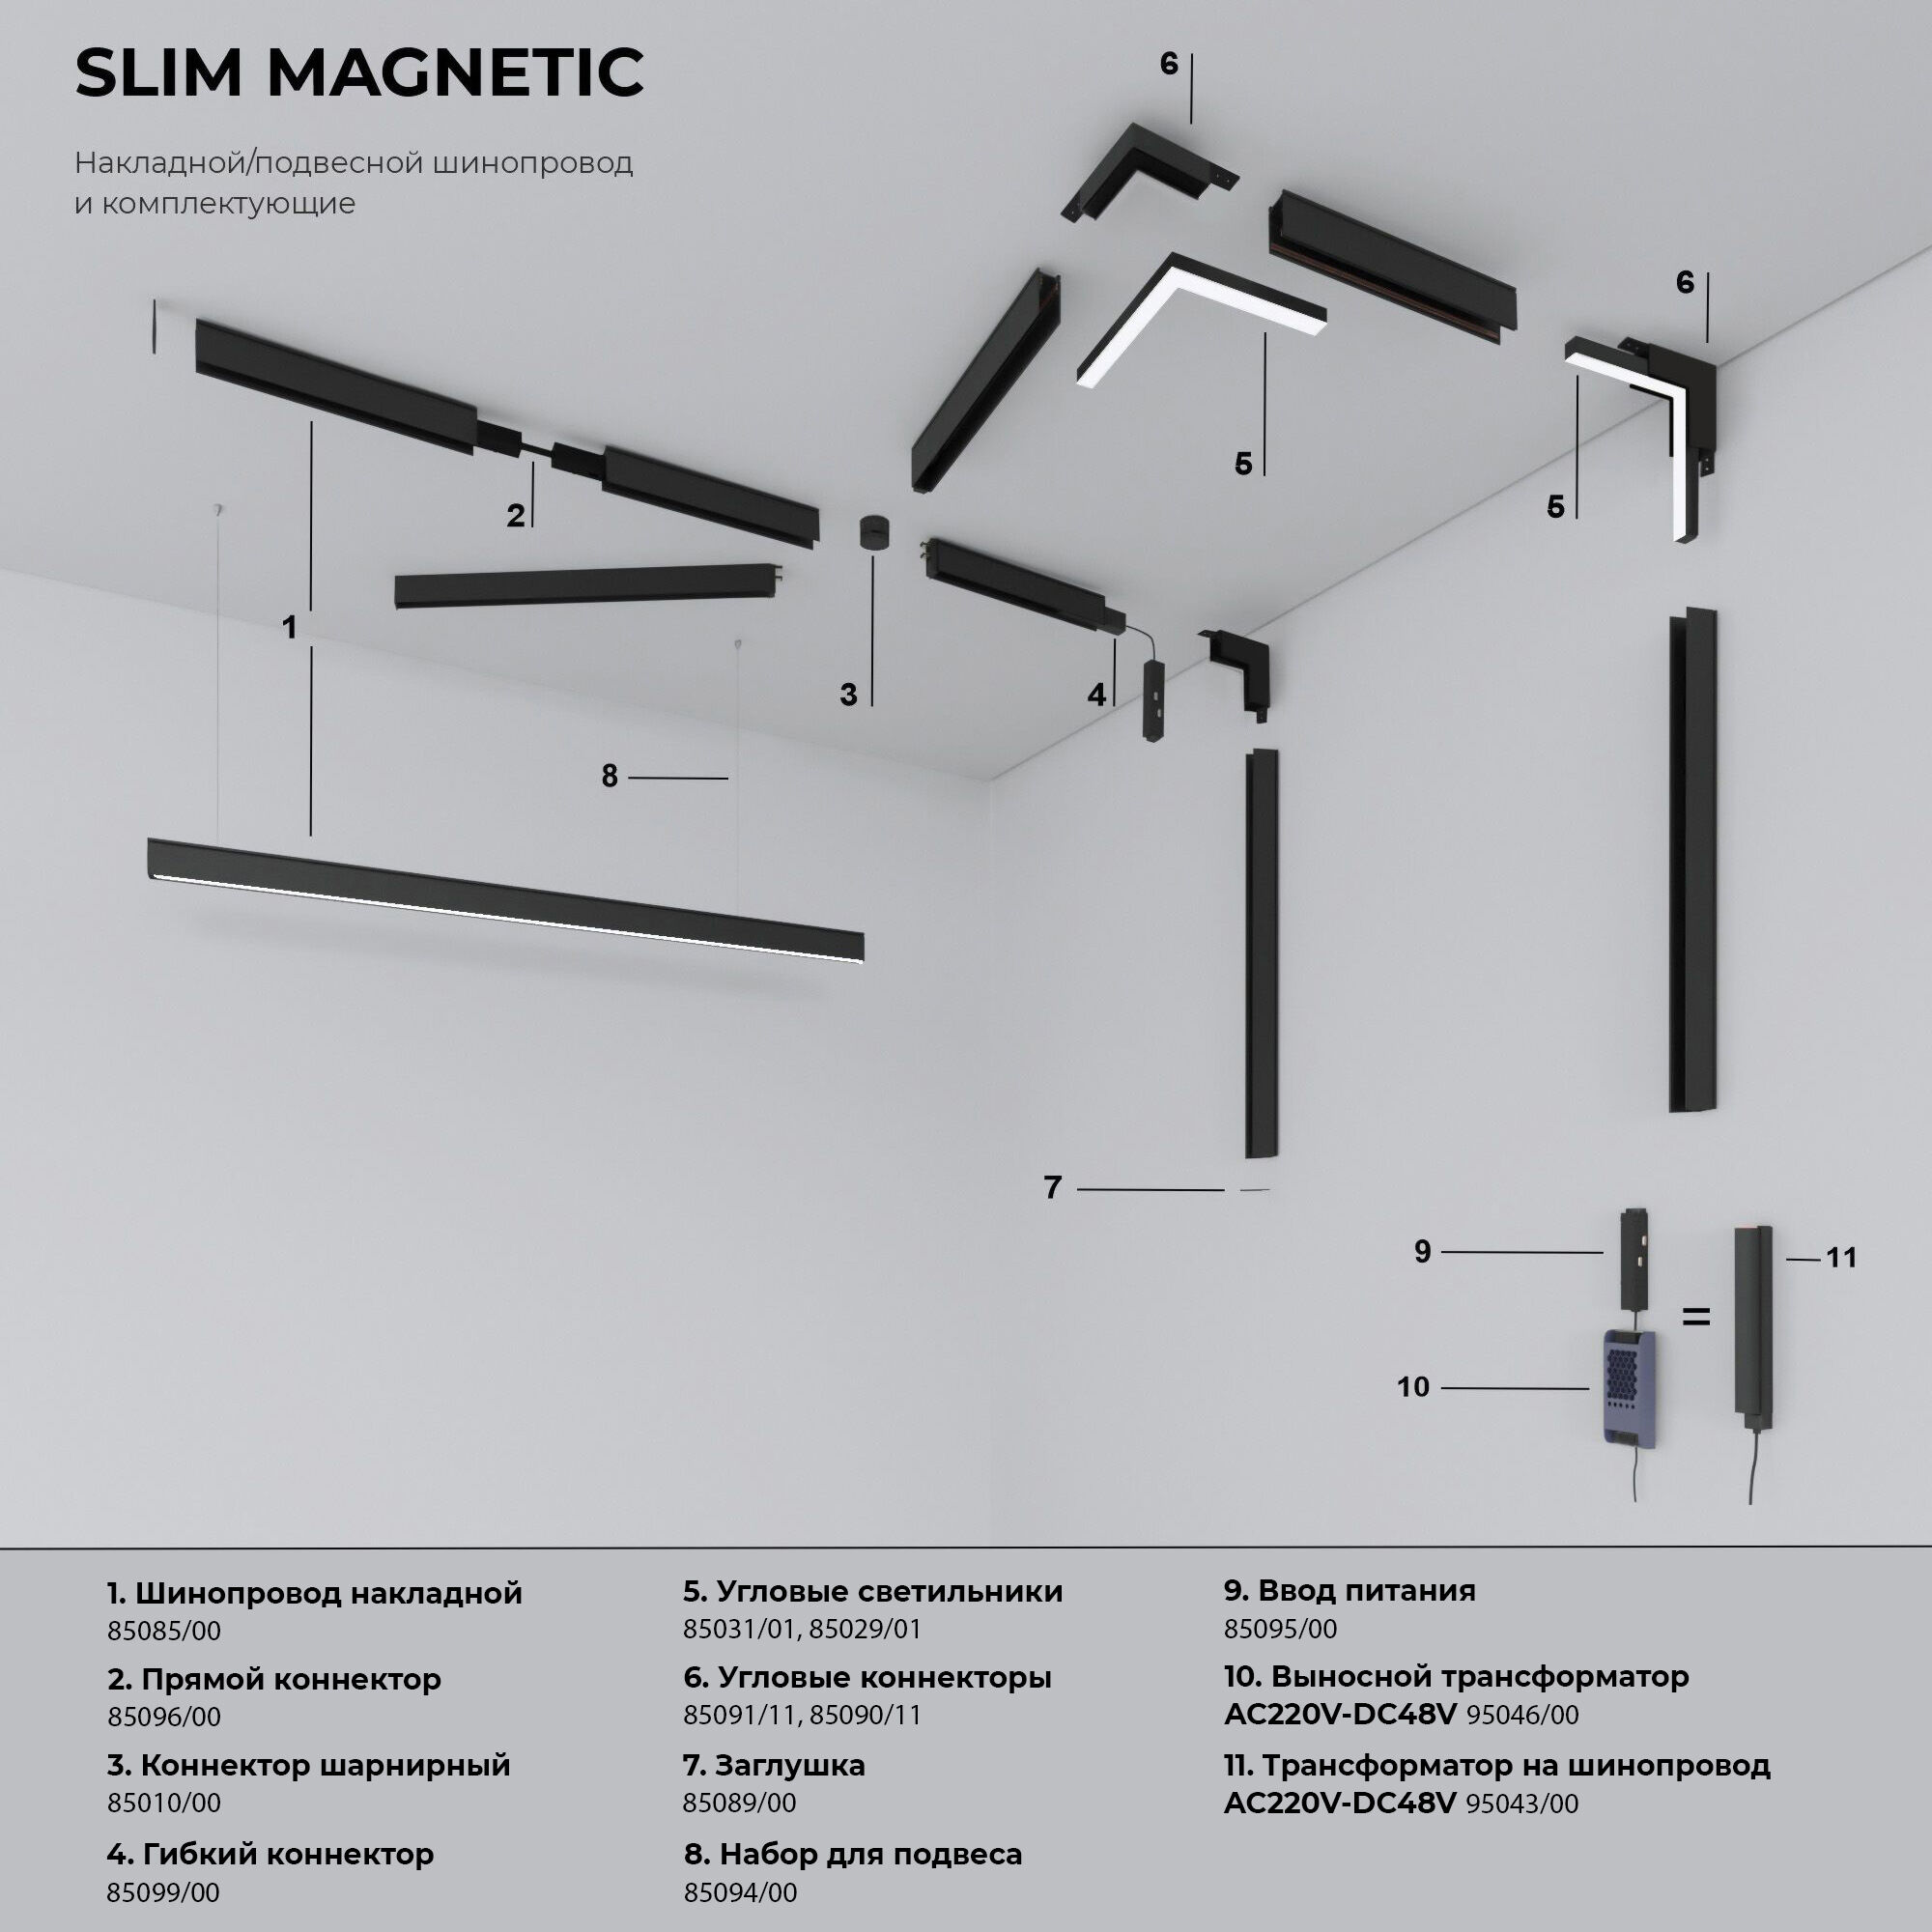 Slim Magnetic Шинопровод накладной белый 1м 85085/00